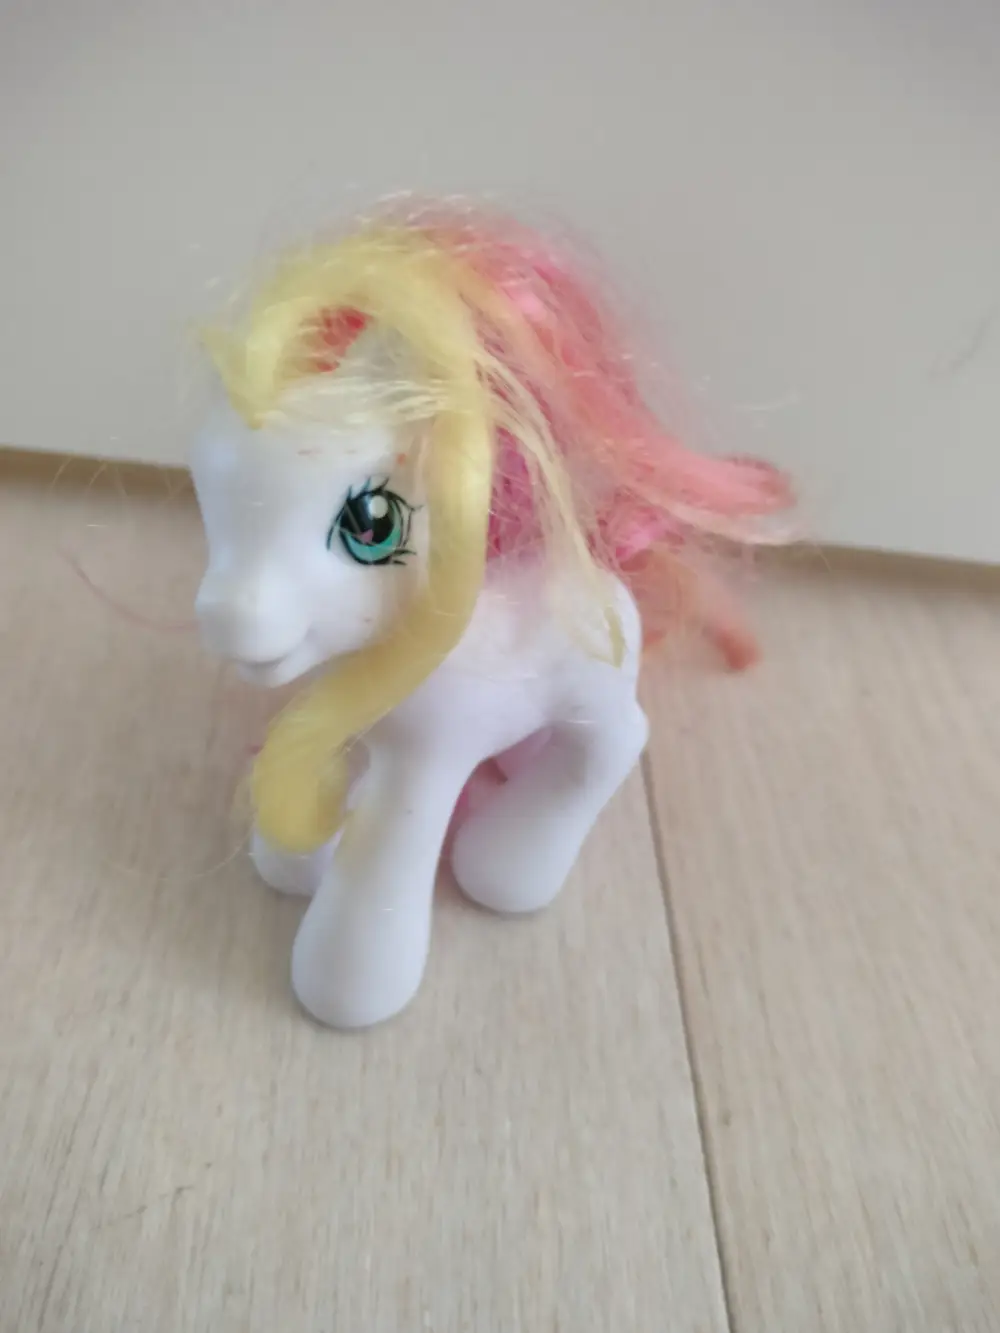 My Little Pony Ponyer